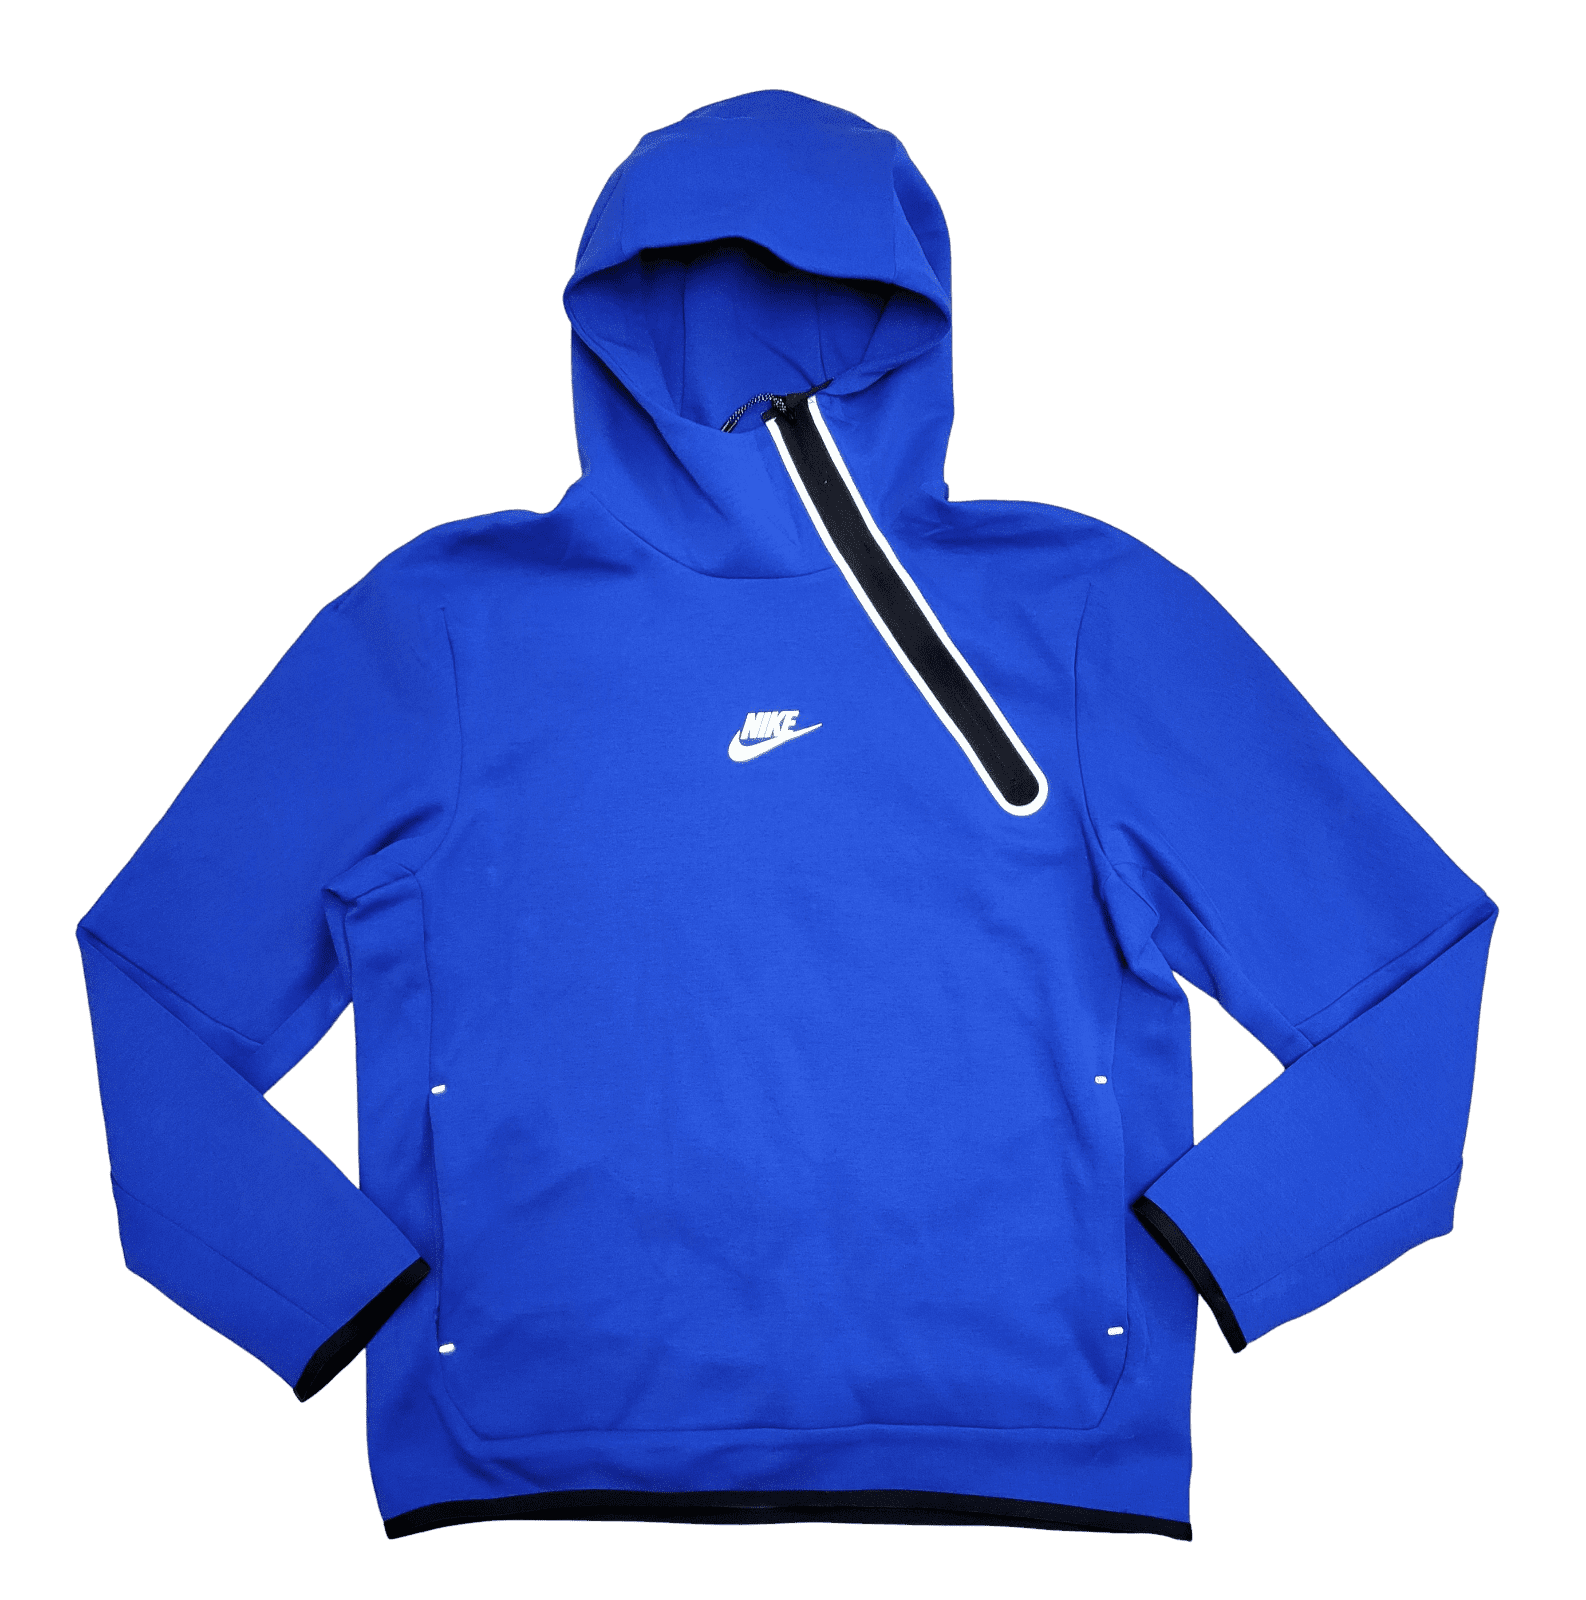 Nike NSW Tech Fleece Asymmetric Half Zip Blue Pullover Hoodie Size L ...